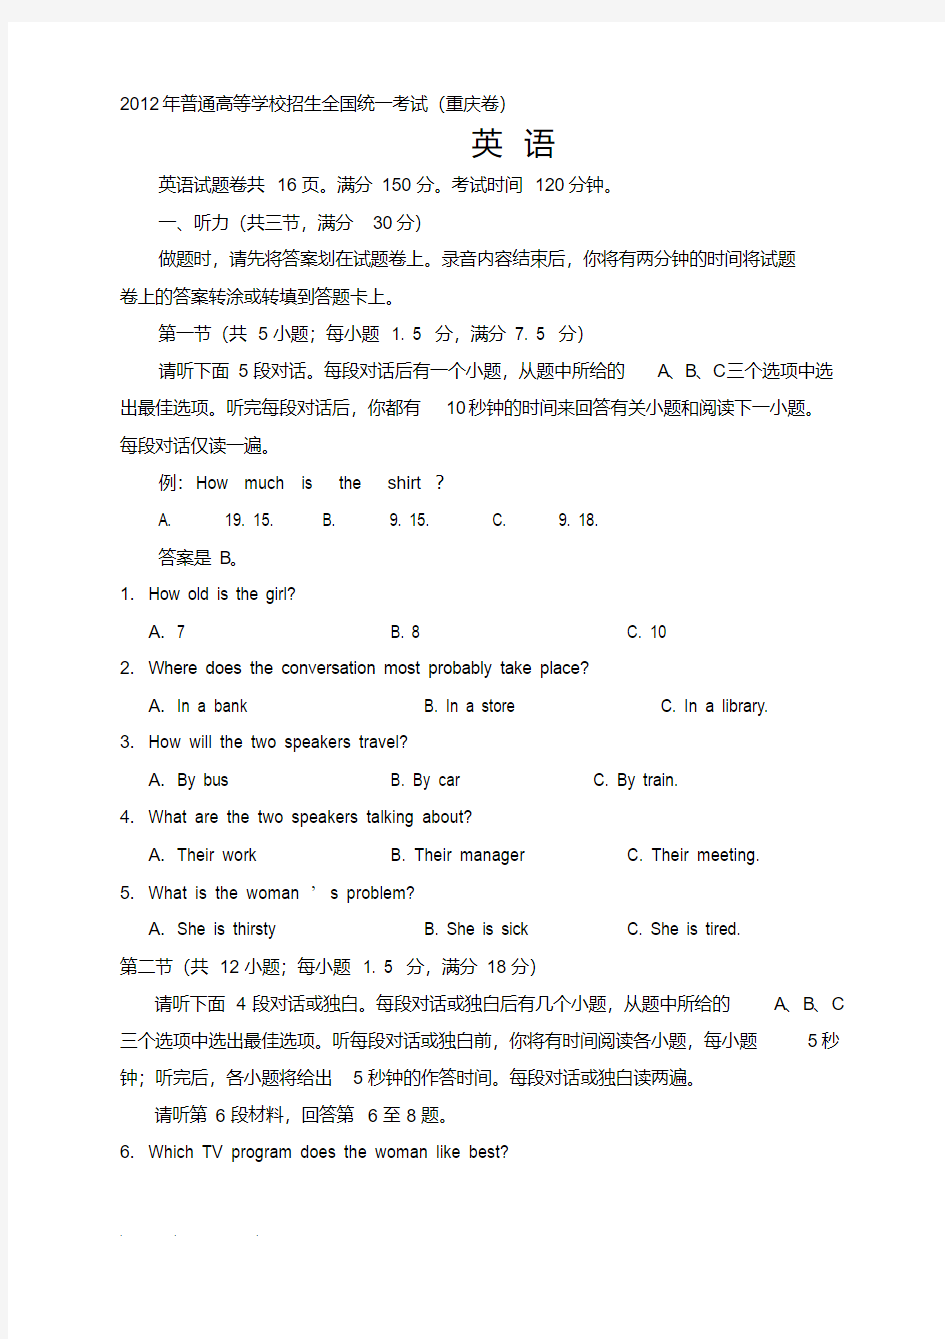 2019年整理年重庆市高考英语试卷真题与答案(重庆卷)资料全